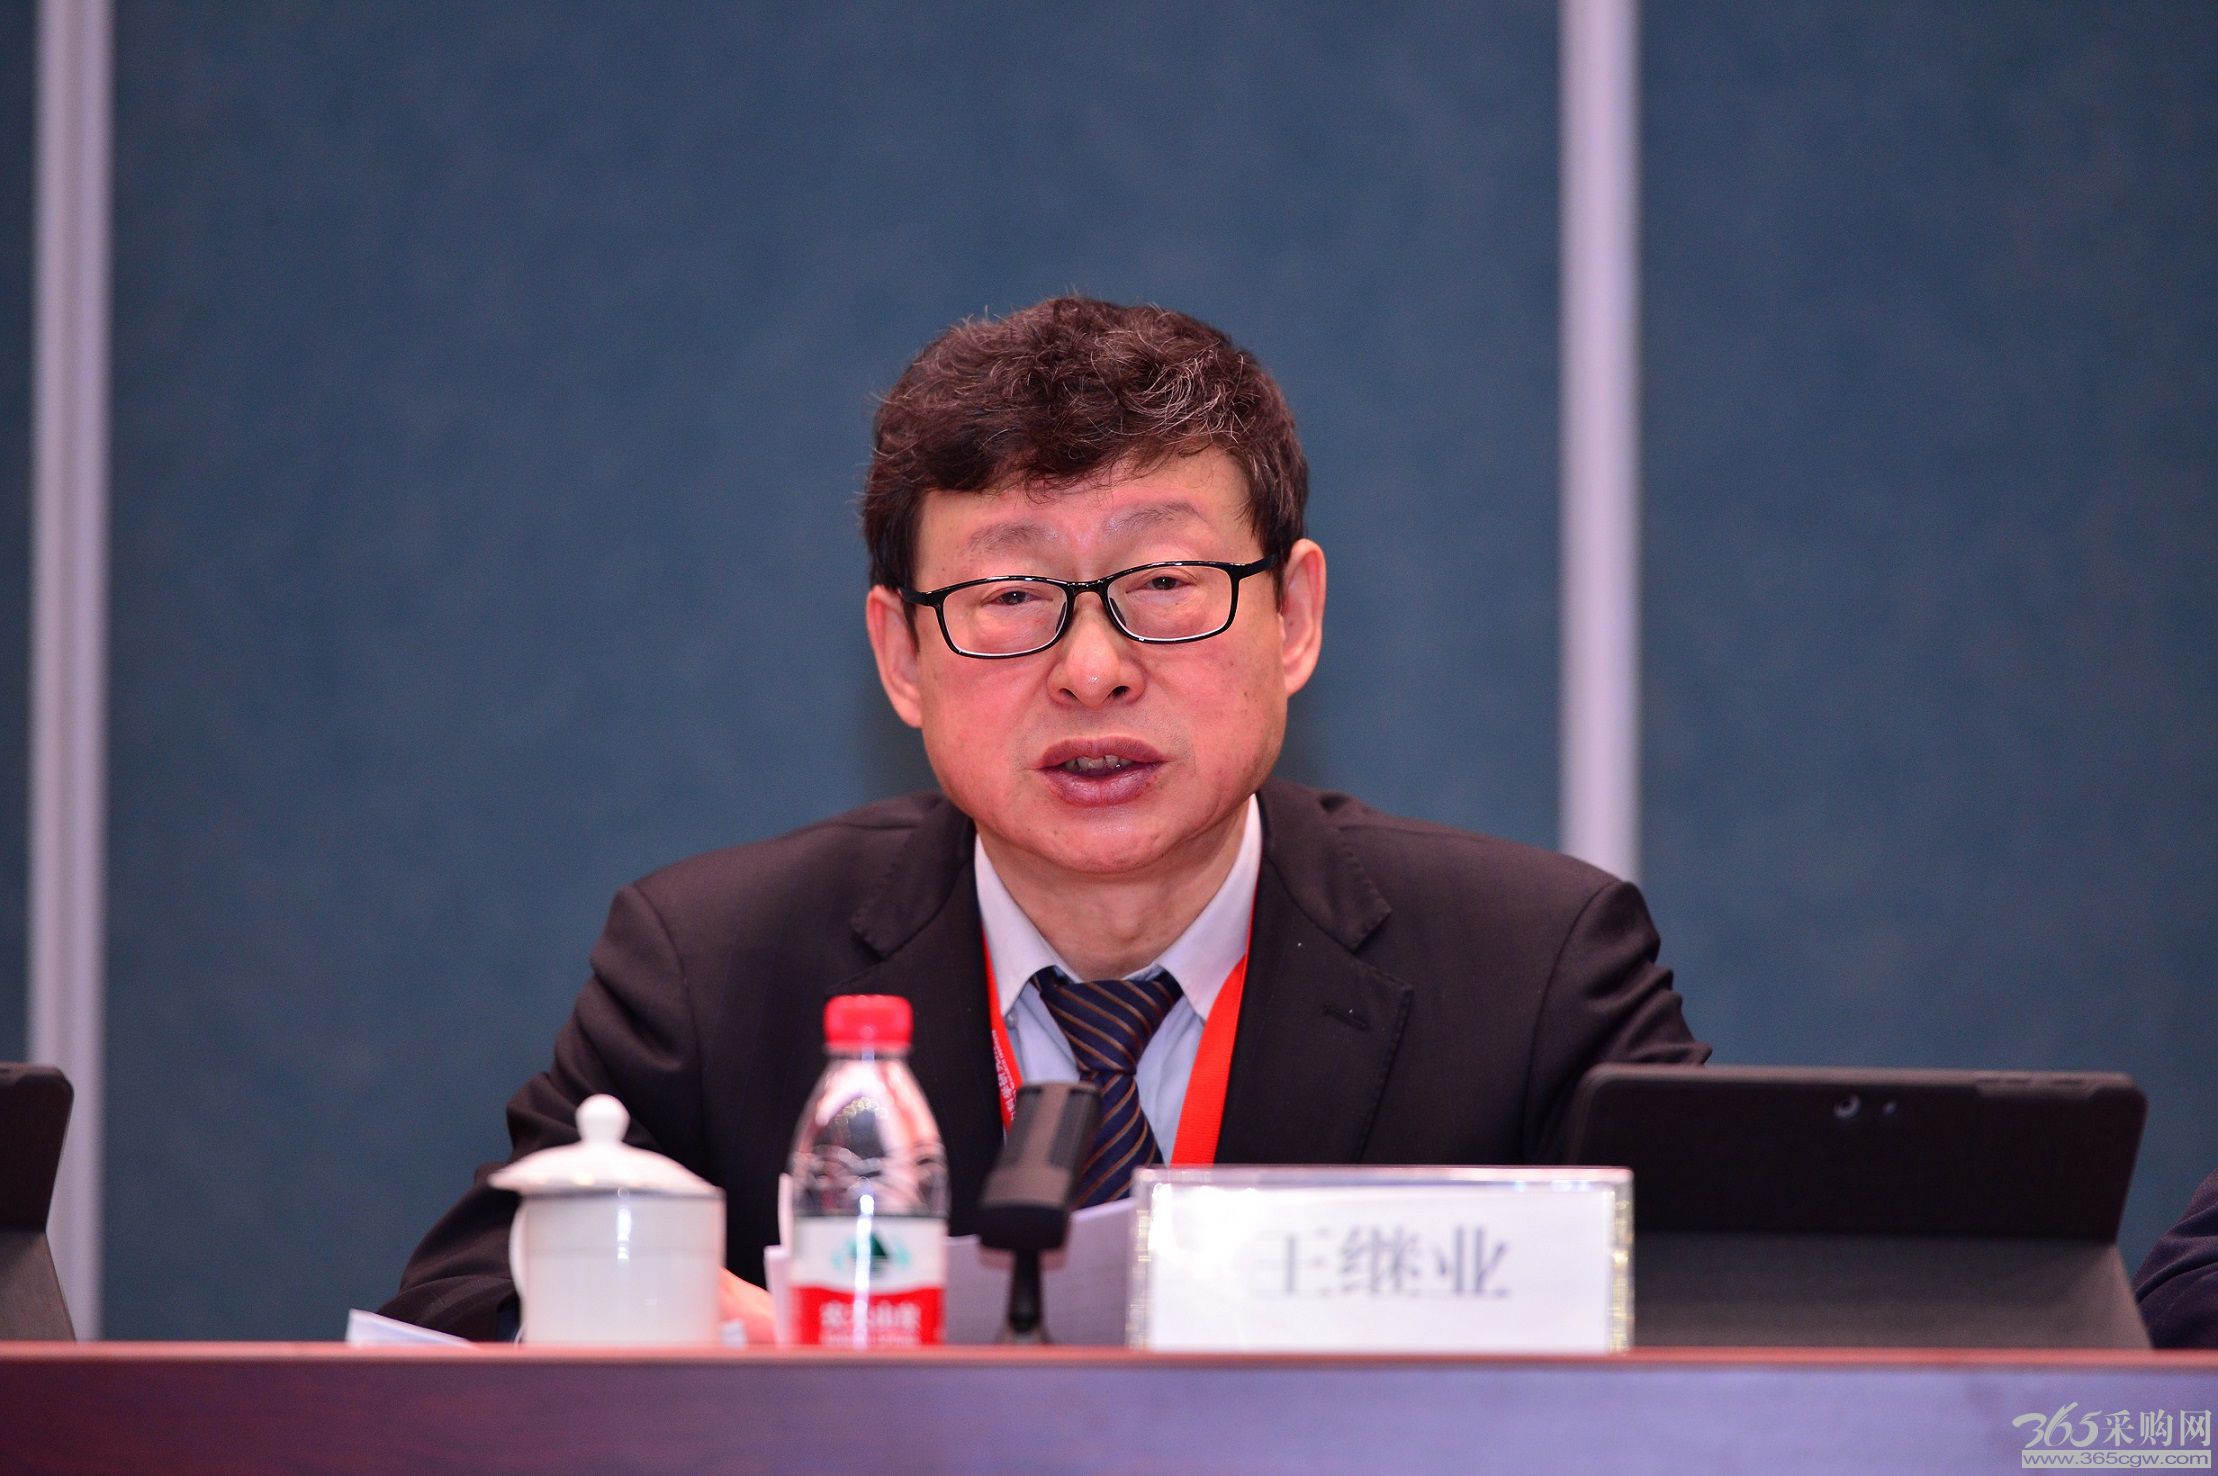 中国电科院第八届职工代表大会第一次会议暨2022年工作会议召开